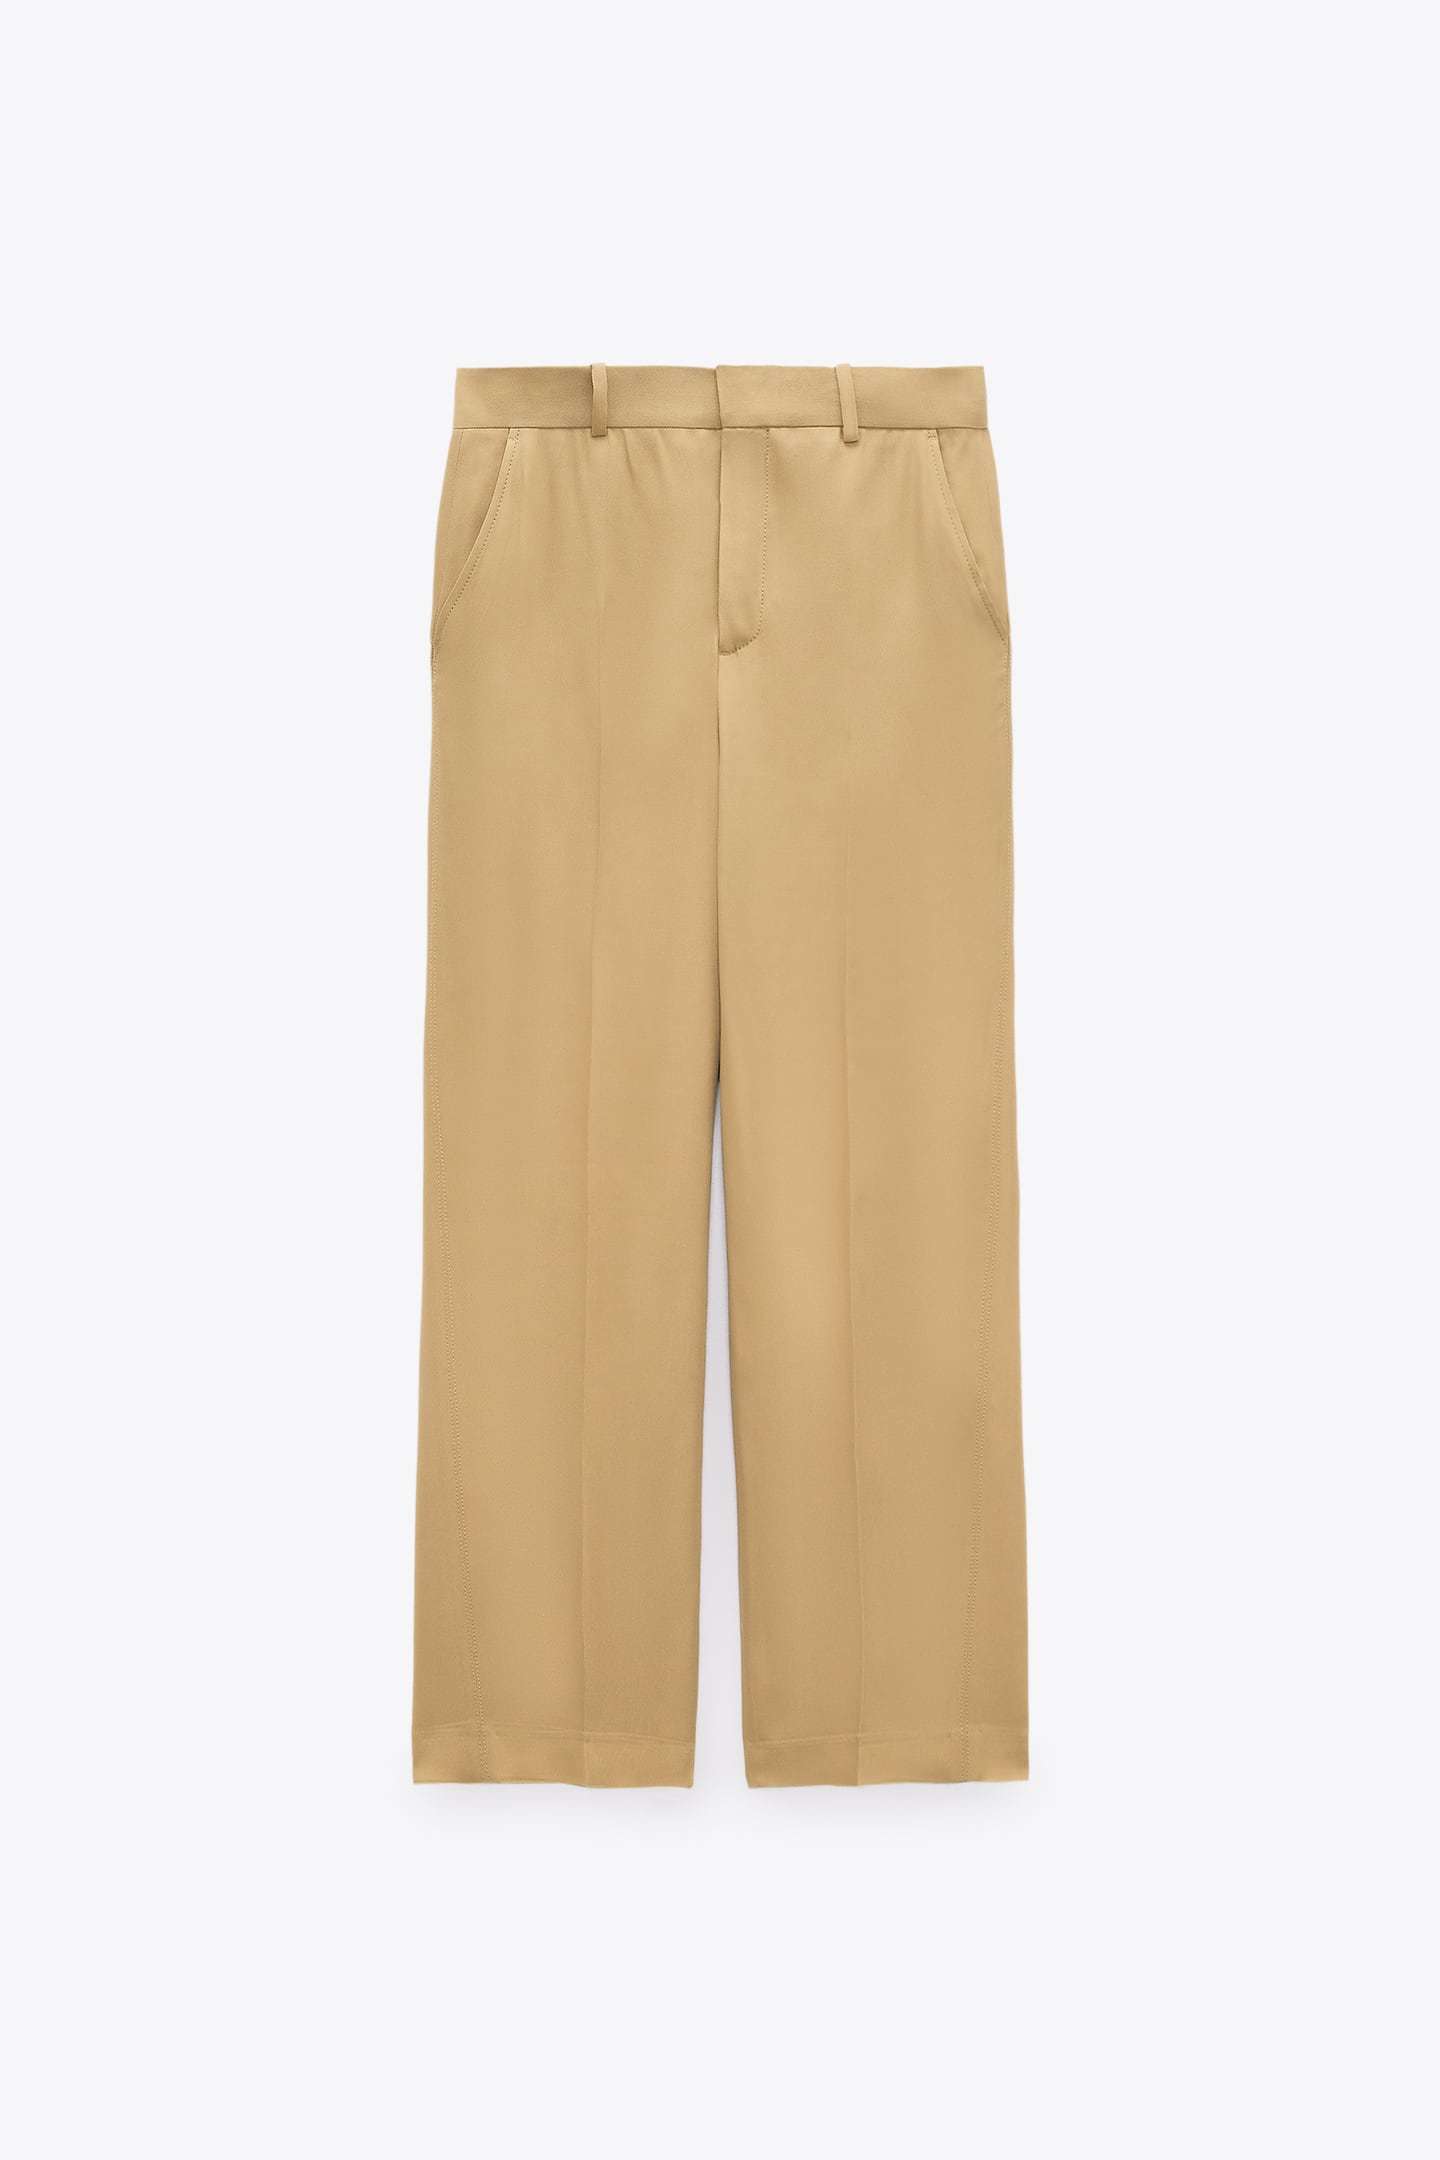 Pantalón ancho, de Zara.